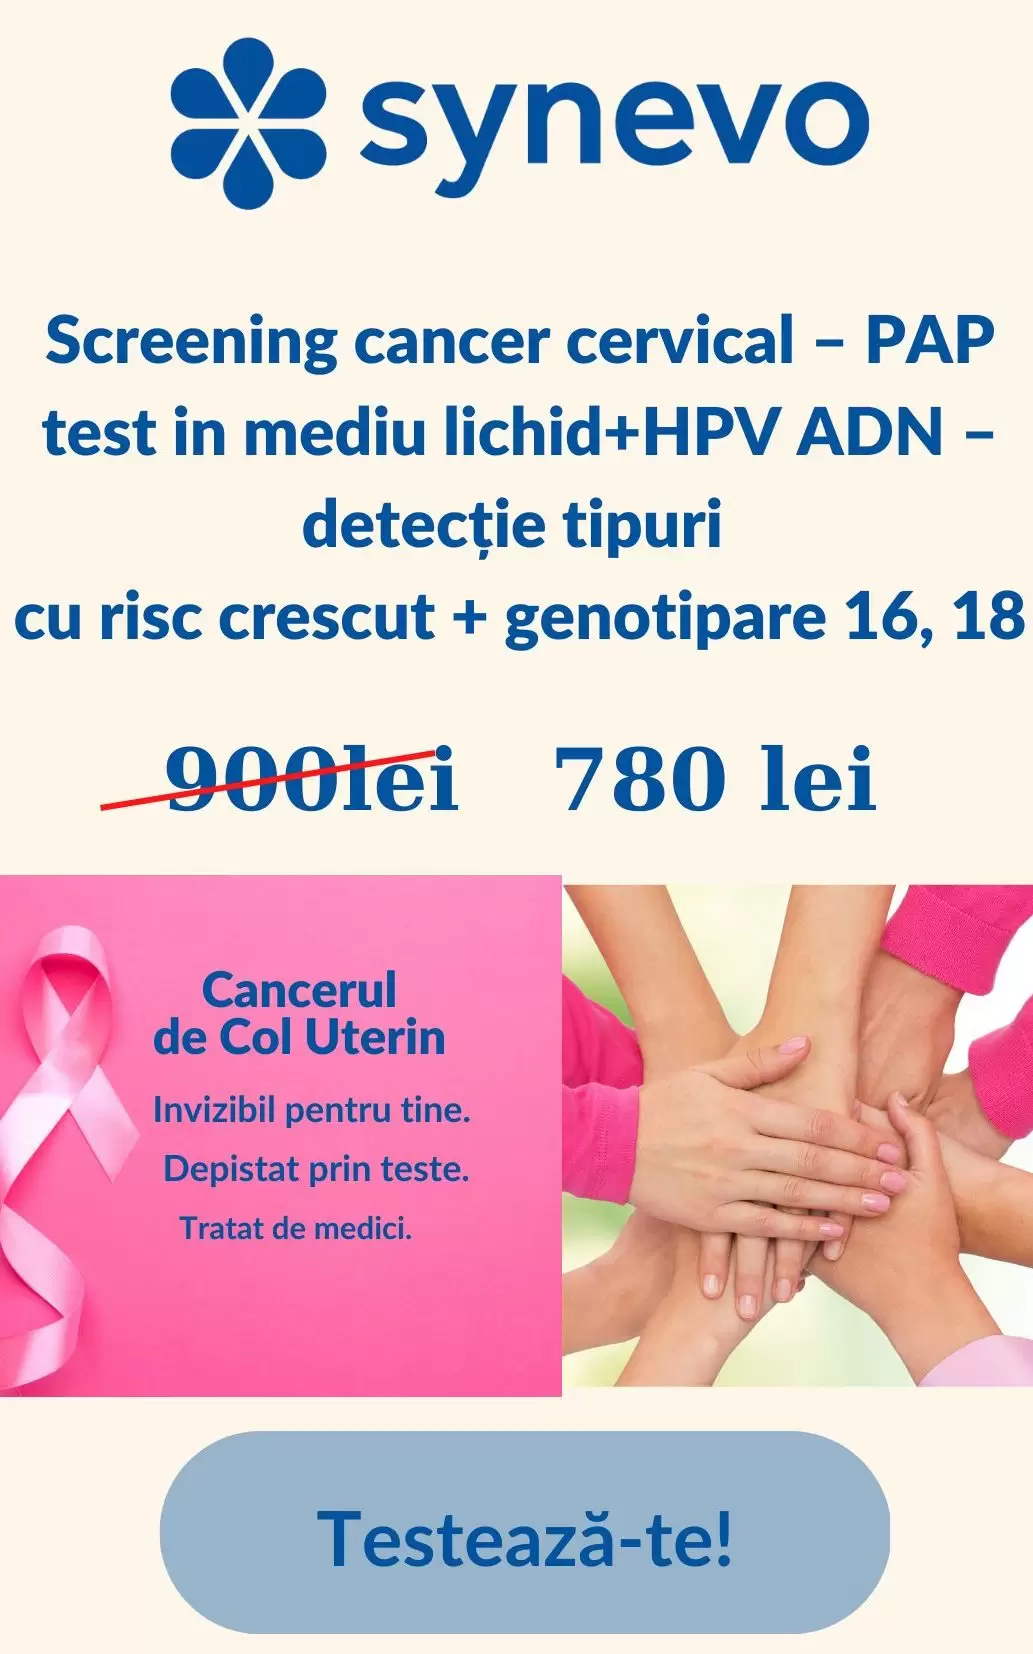 (EXPIRAT)Campanie promoționala: Screening cancer cervical – PAP test in mediu lichid + HPV ADN – detectie tipuri cu risc crescut + genotipare 16, 18 - Synevo